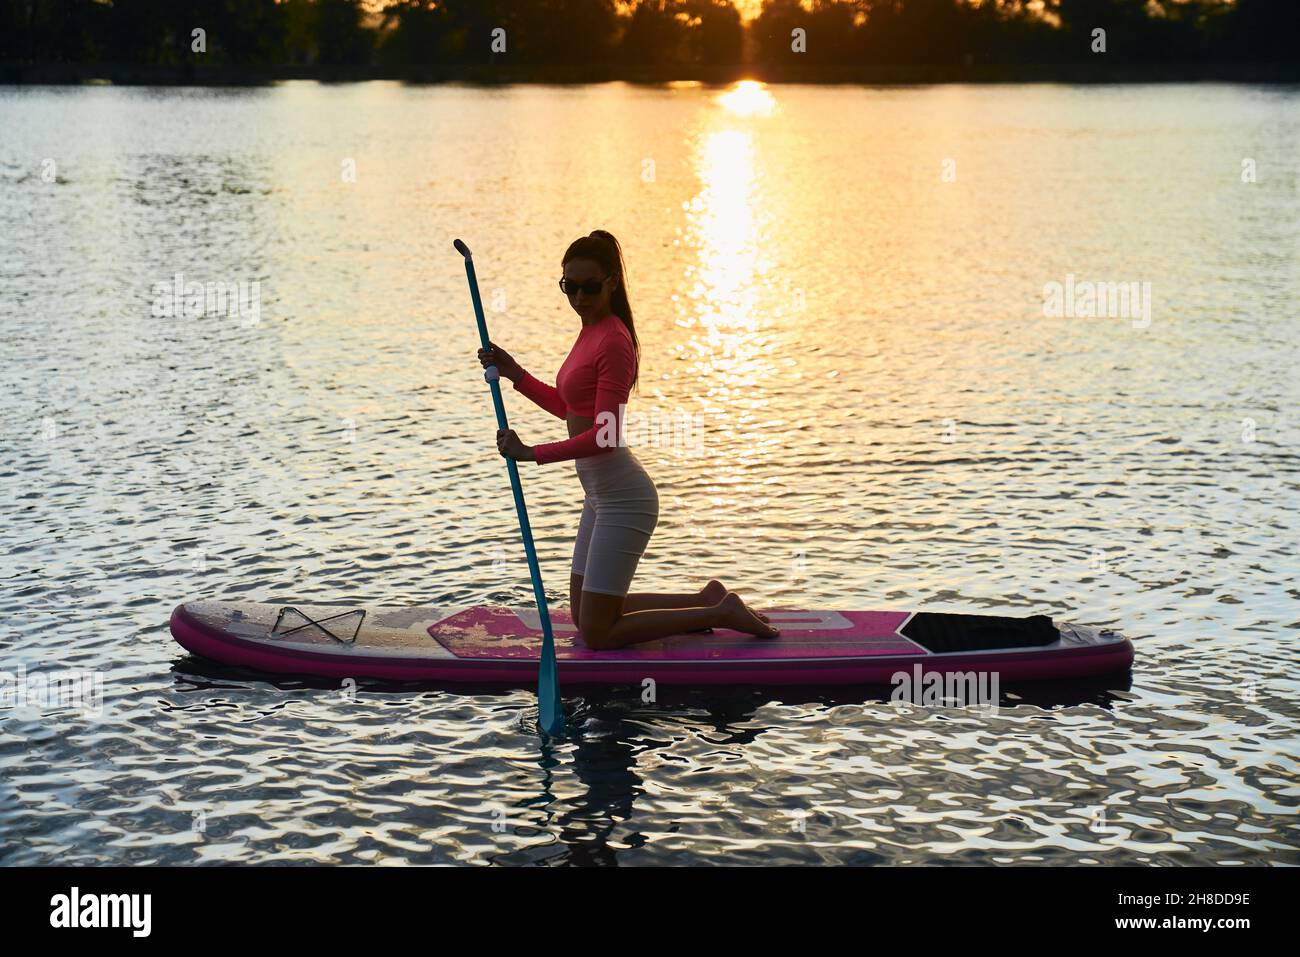 Gesunde und fit junge Frau in Sportkleidung und Sonnenbrillen Surfen auf dem Paddle Board während des Sommers Sonnenuntergang über dem Stadtsee. Konzept von Menschen, Freizeit und gesunden Lebensstile. Stockfoto